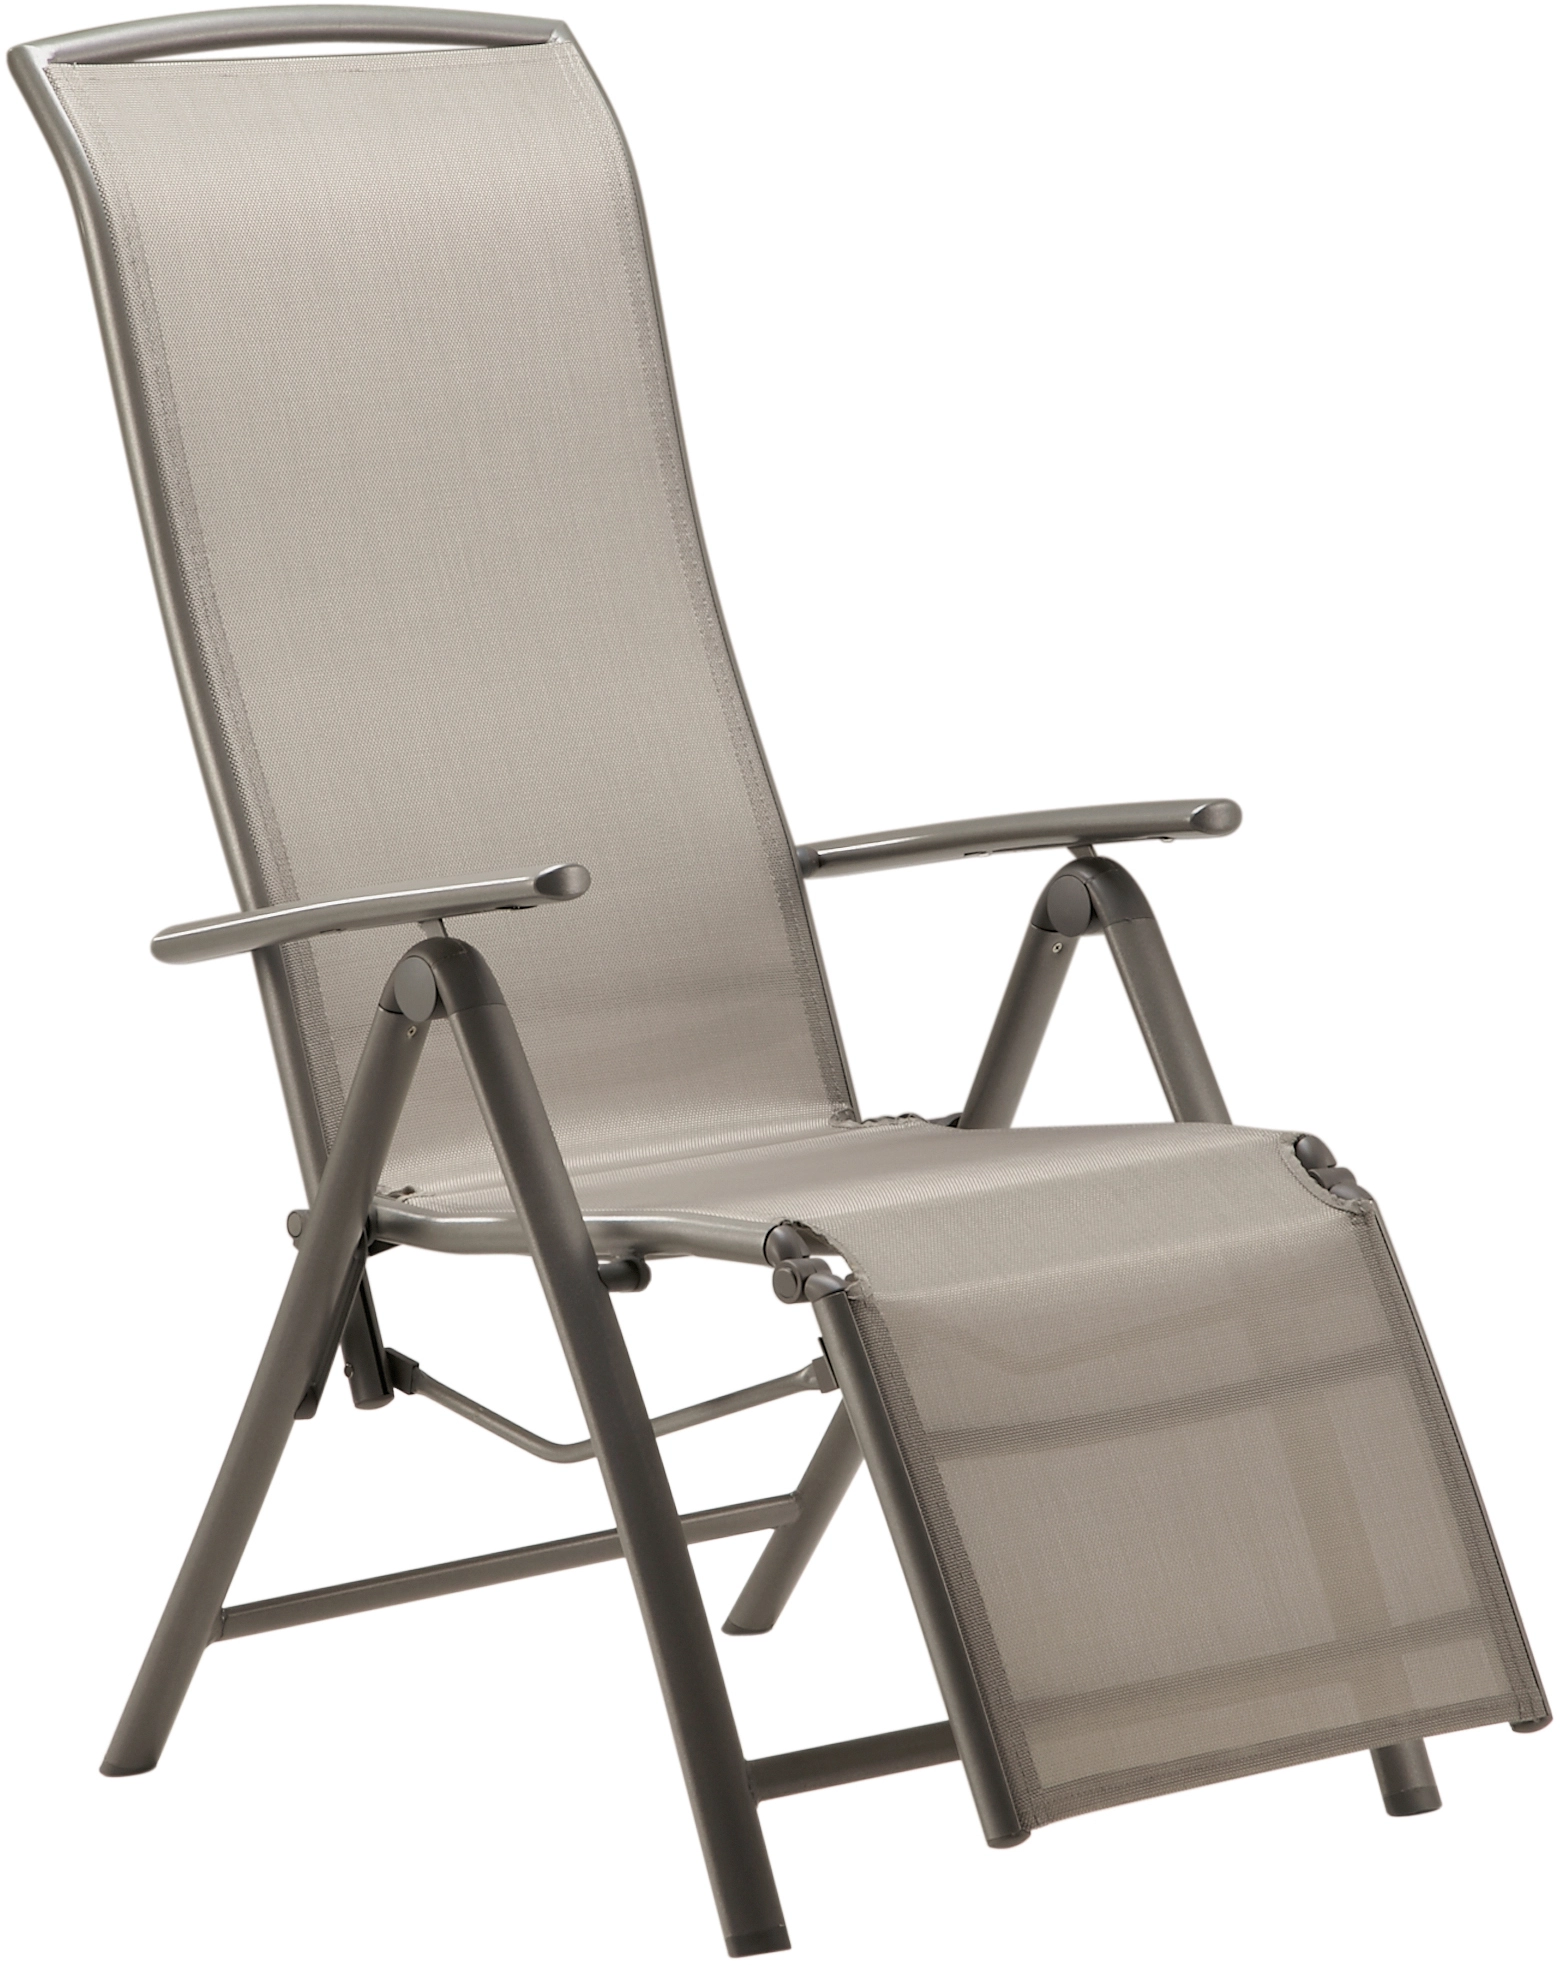 Relaxsessel Vigo mit verstellbarer Rückenlehne und Fußstütze Textilen Grau  kaufen bei OBI